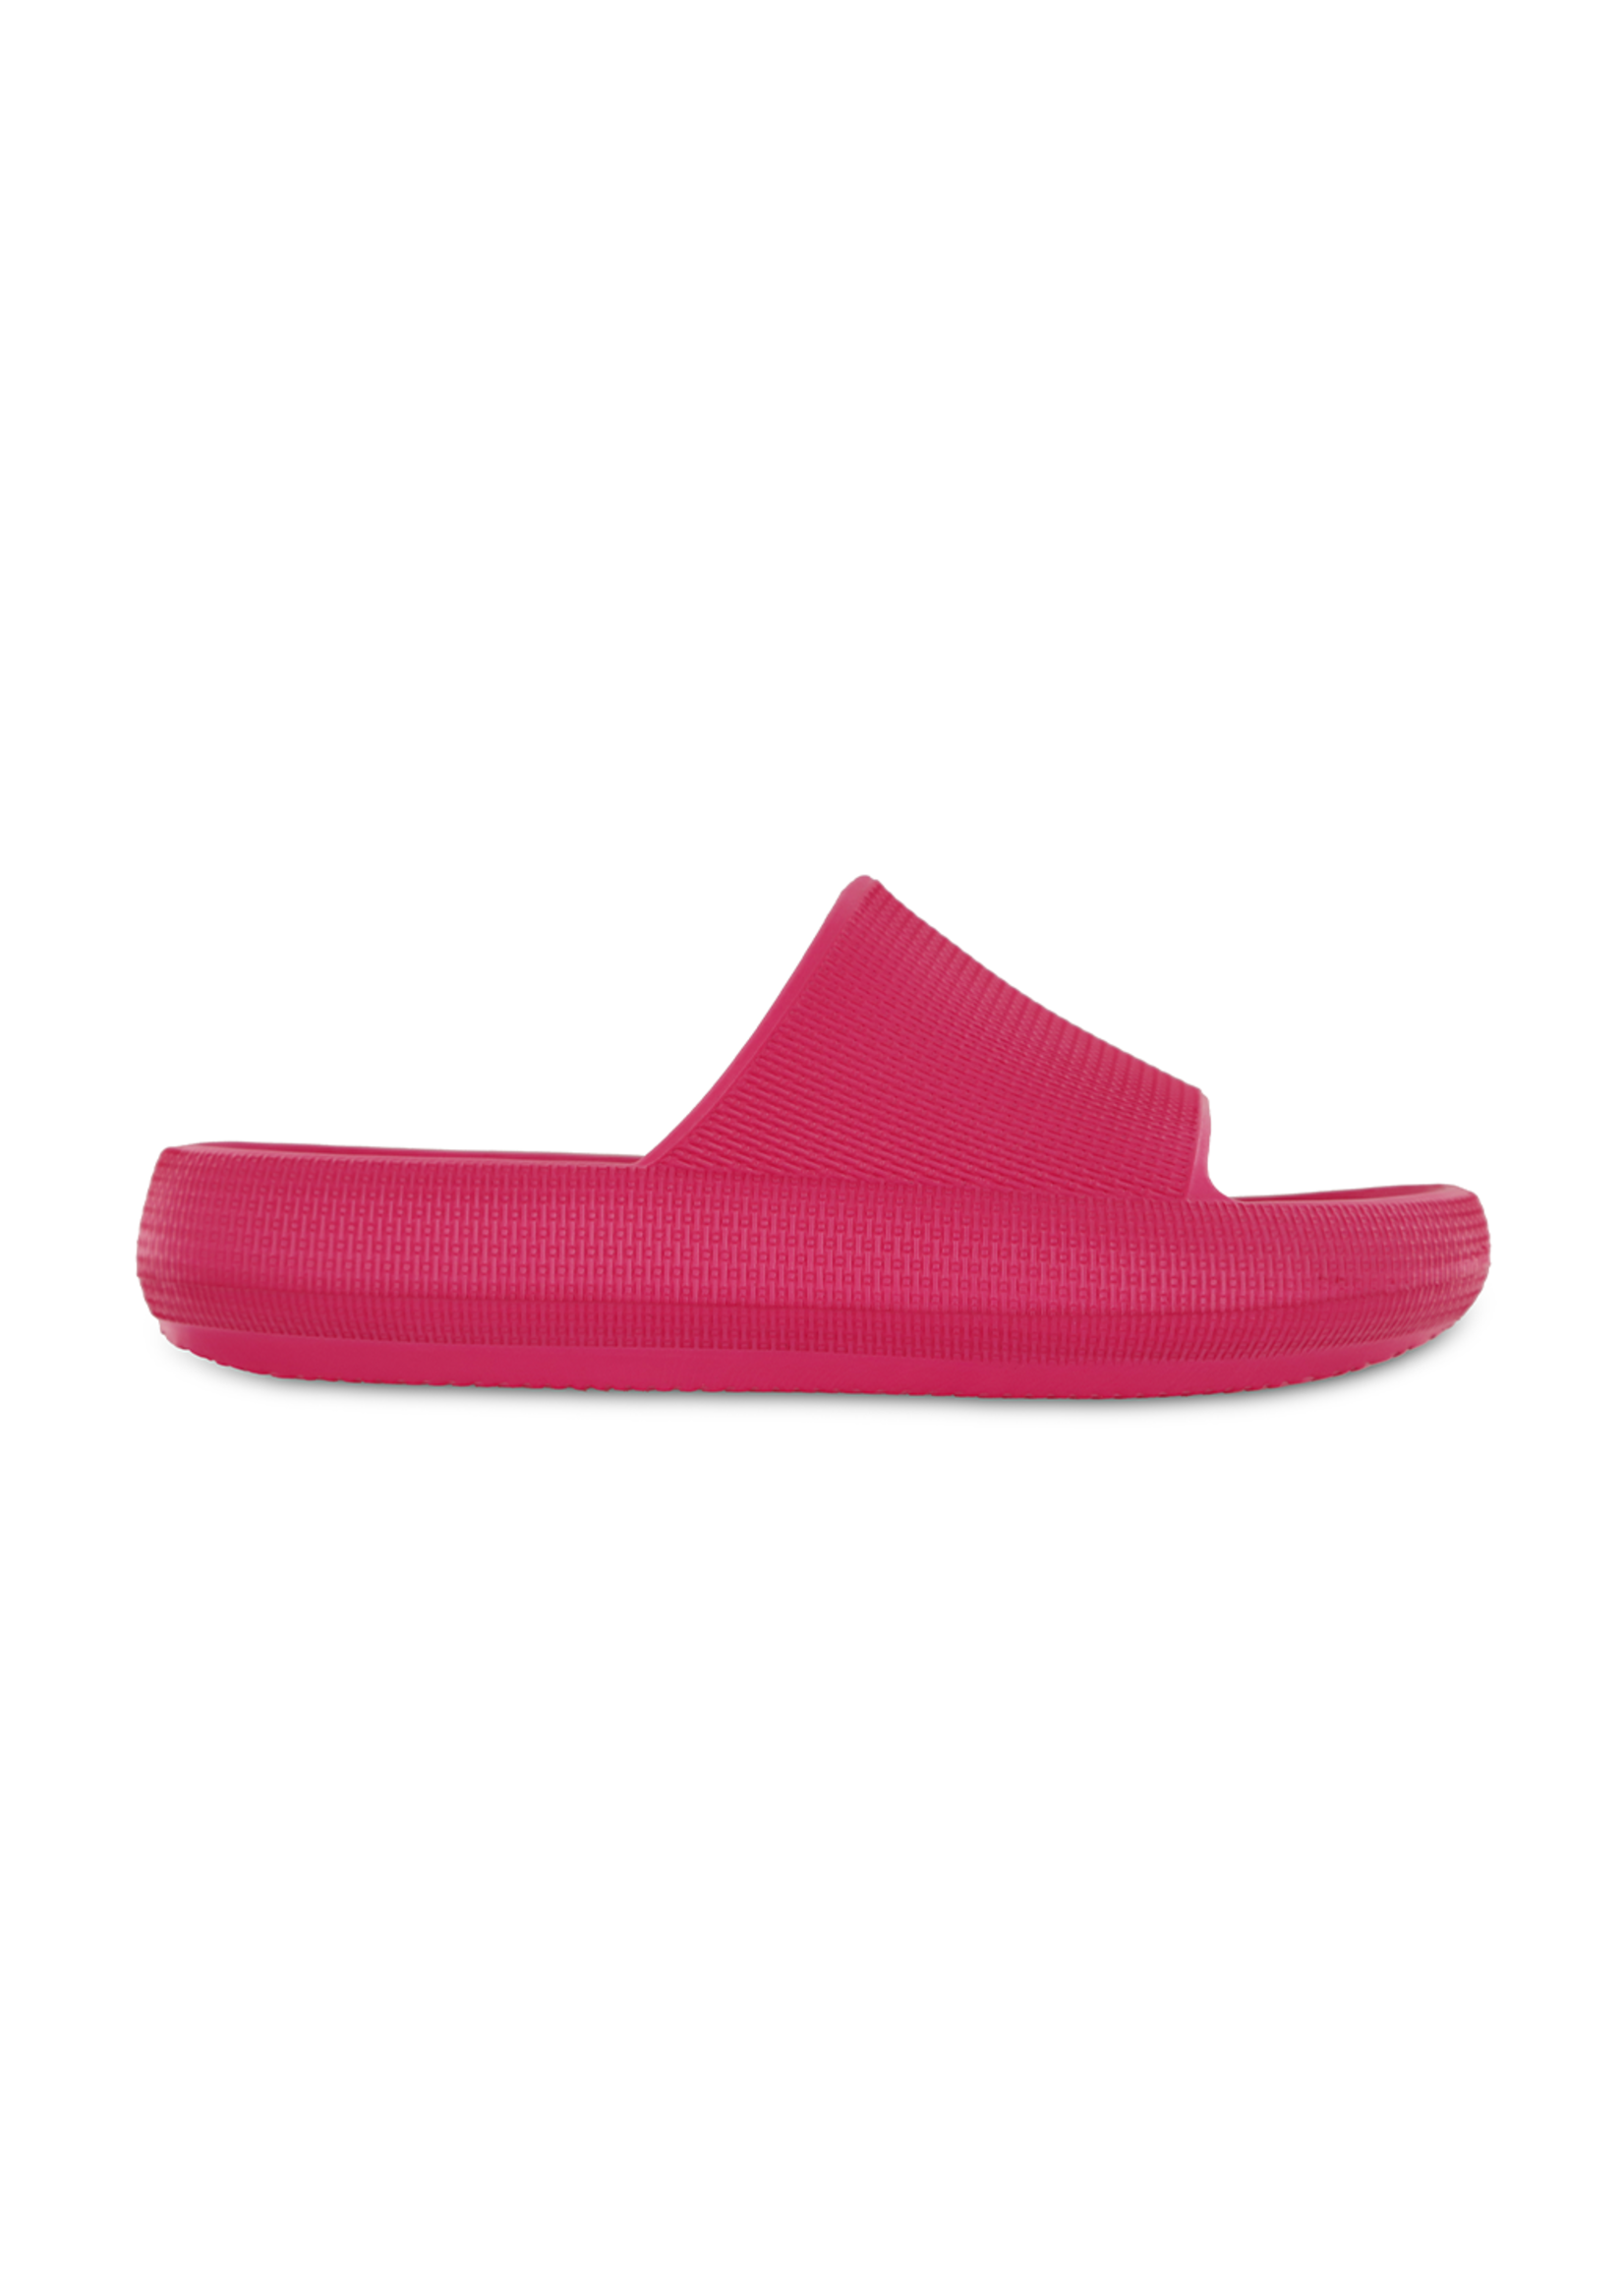 Mia Shoes Lexa EVA Slide in Hot Pink by Mia Footwear